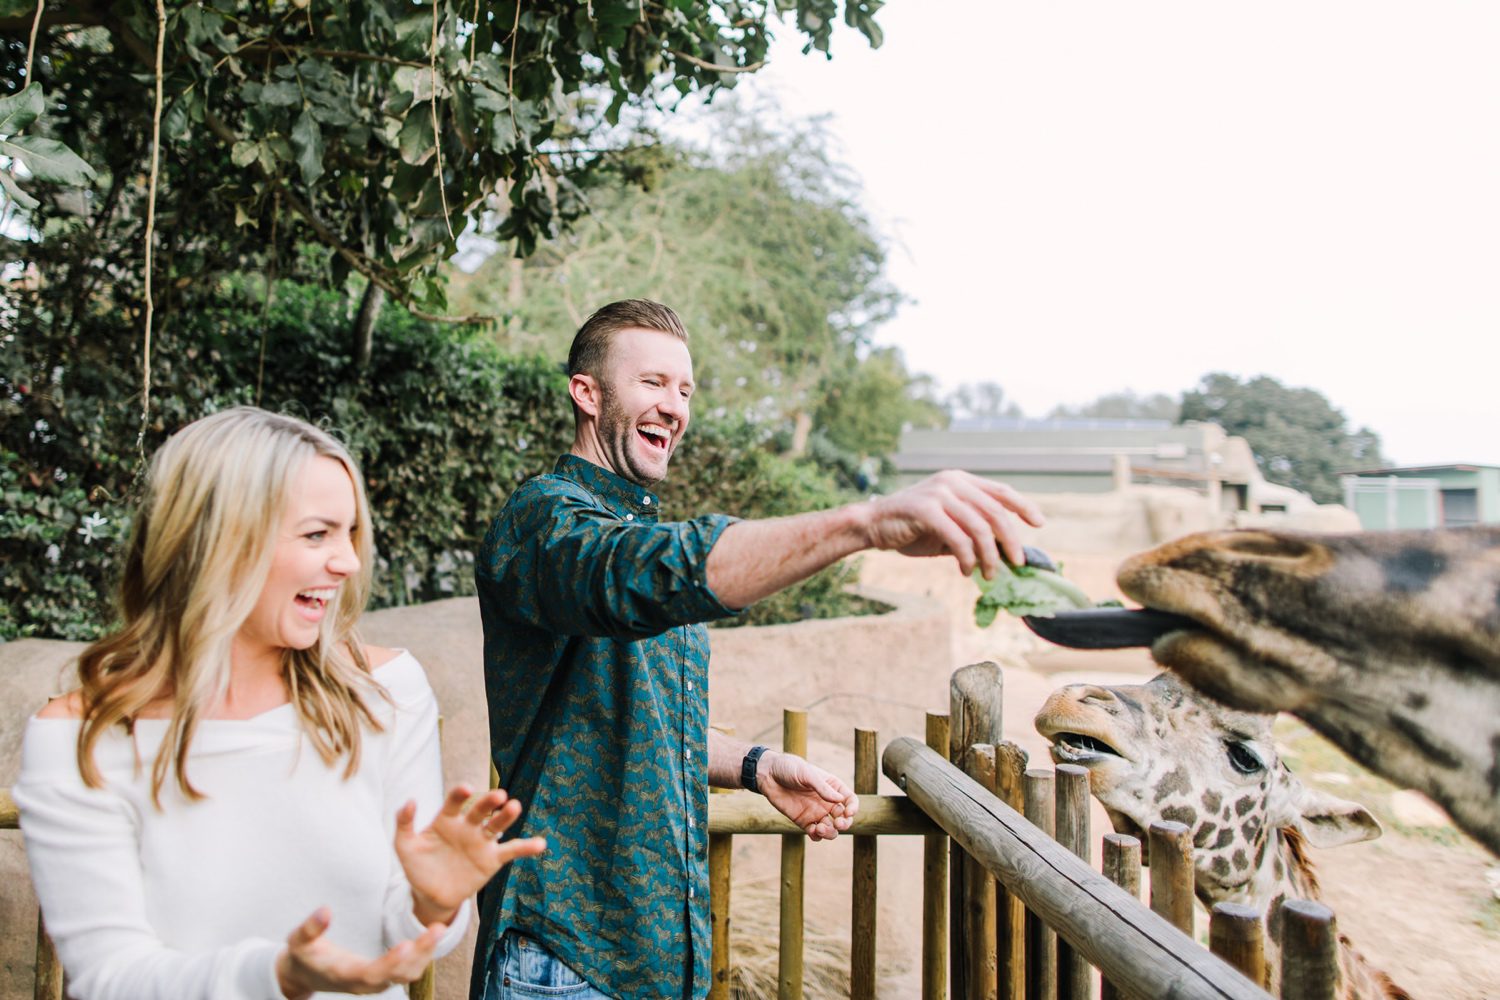 Man and Woman laughing while feeding giraffe at Santa Barbara Zoo